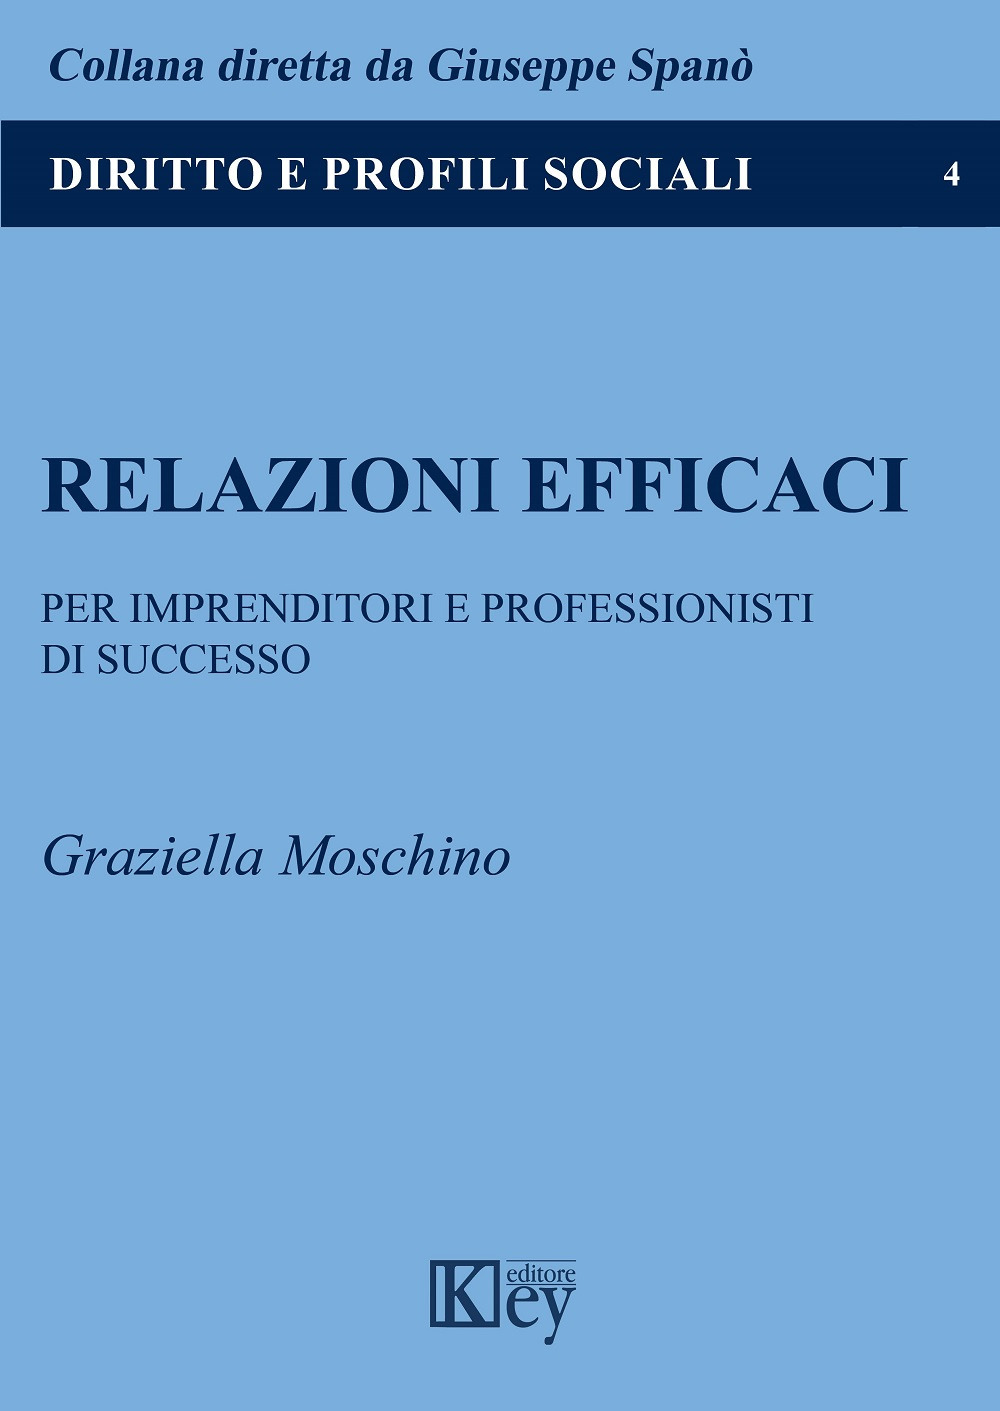 Libri Graziella Moschino - Relazioni Efficaci NUOVO SIGILLATO, EDIZIONE DEL 15/01/2020 SUBITO DISPONIBILE